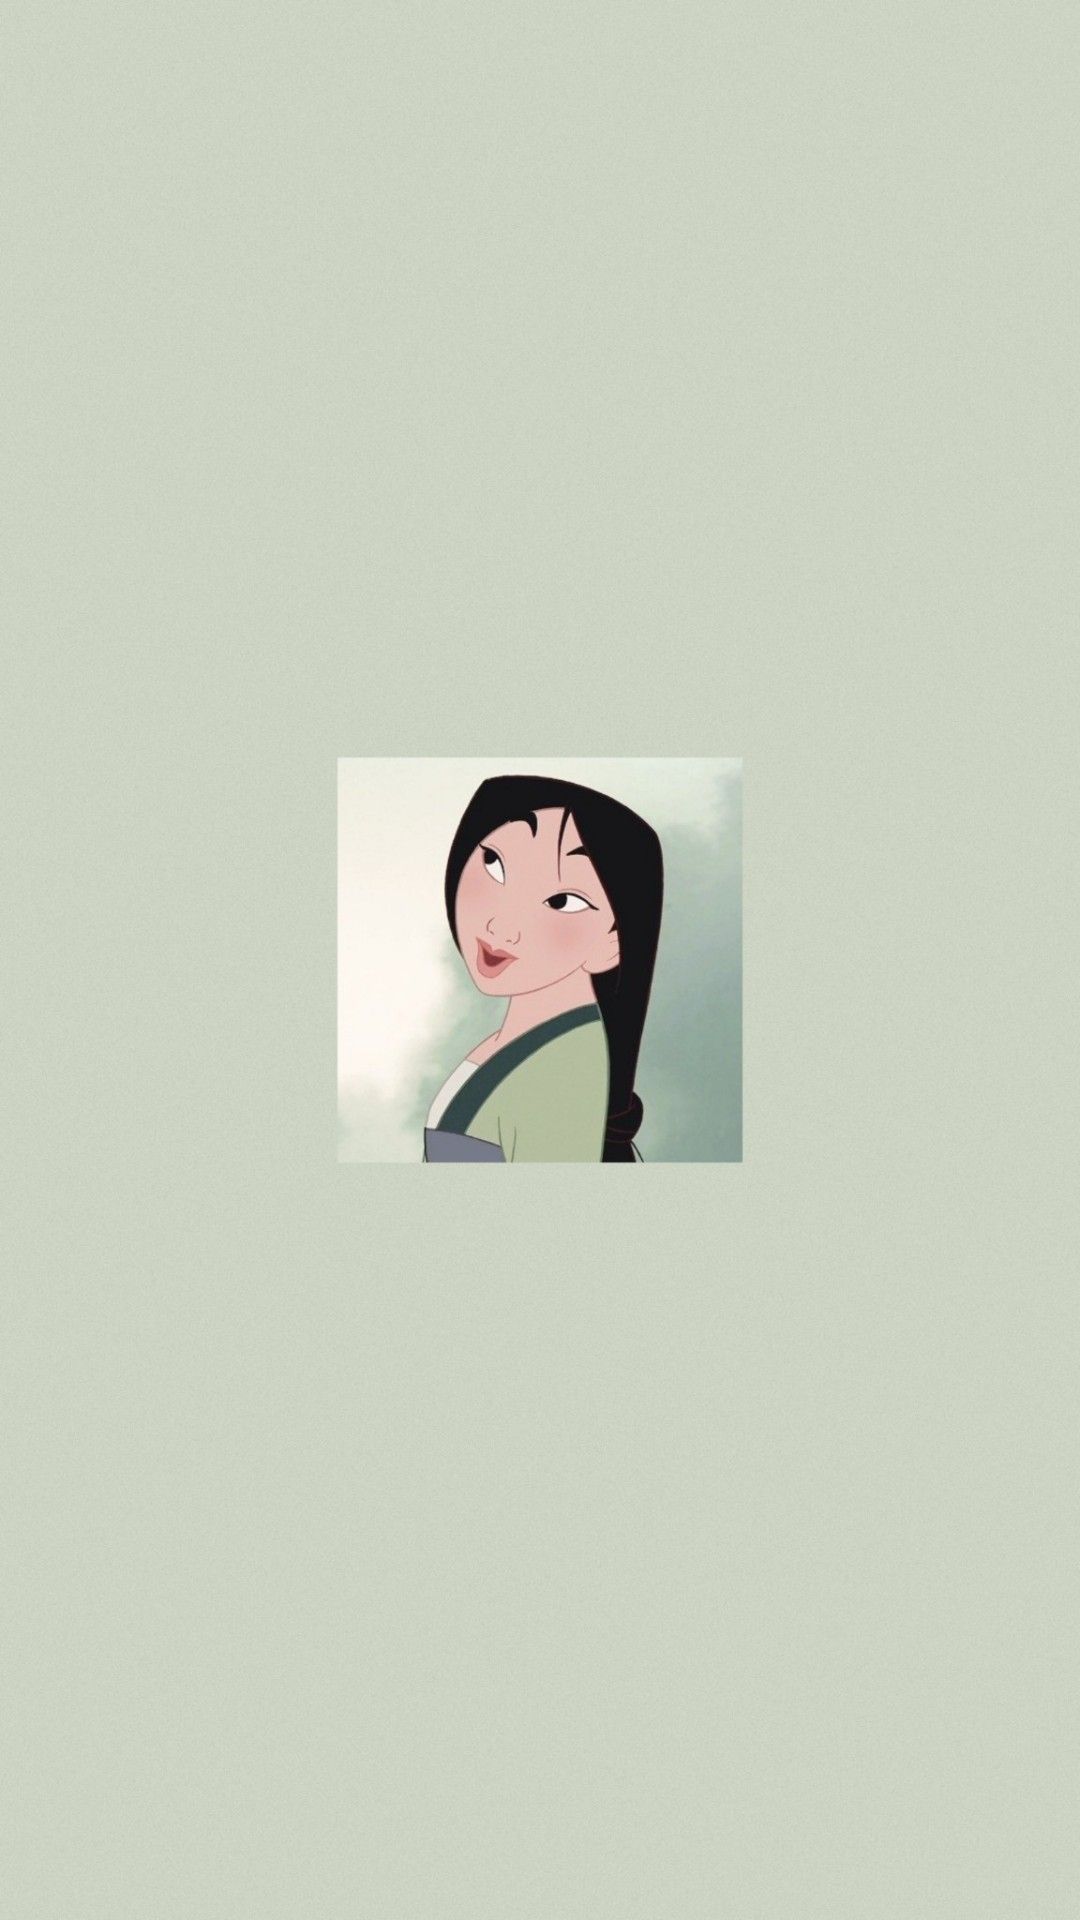 A cartoon character with black hair - Mulan